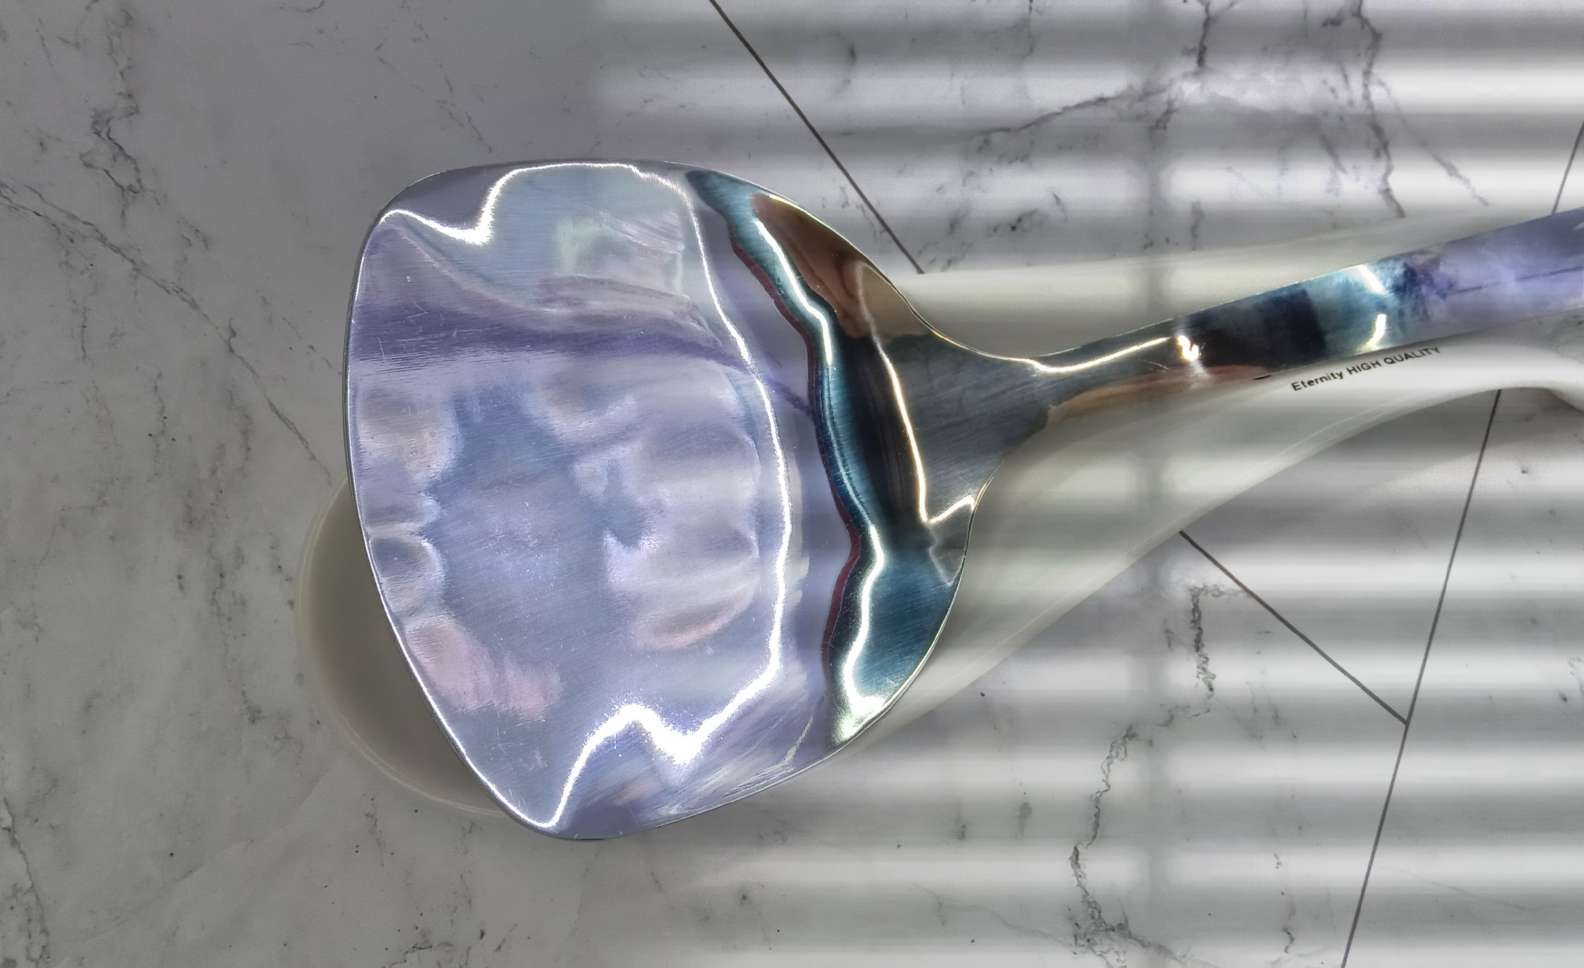 Spoon holder 简约蓝灰色刀叉陶瓷勺垫 厨具锅铲垫细节图